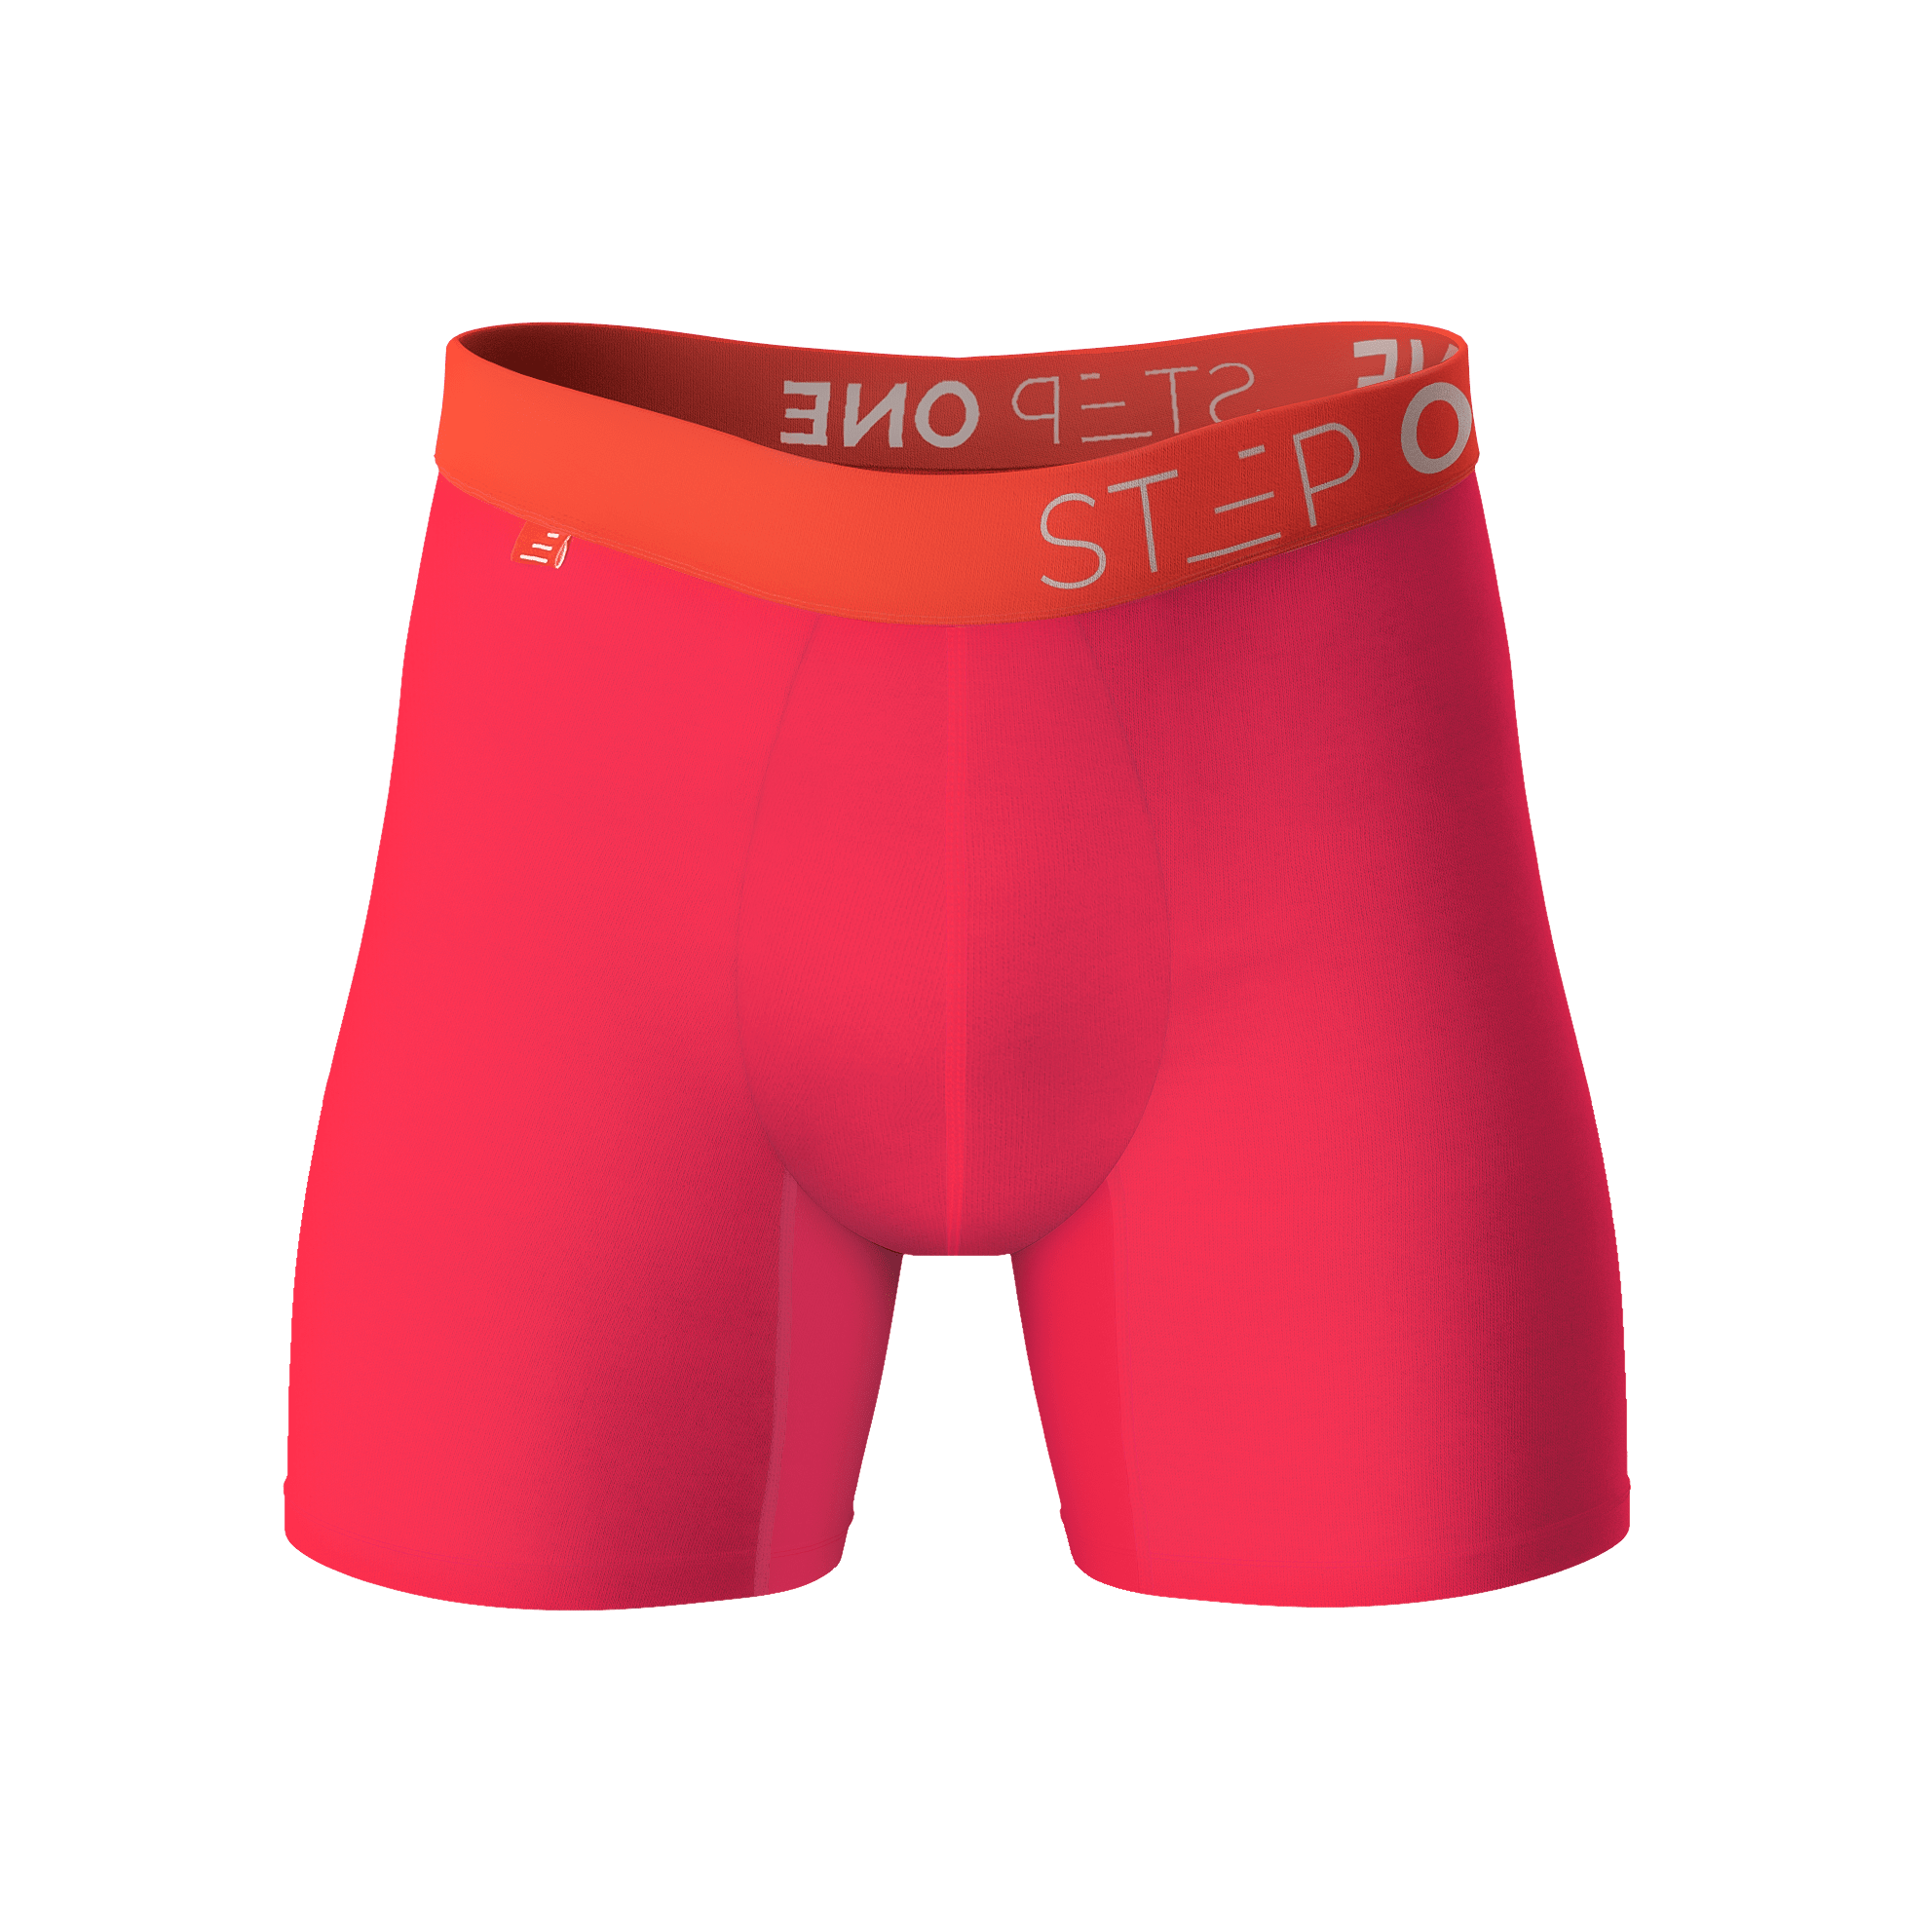 Boxer Brief - Hot Sauce  Step One Men's Bamboo Underwear